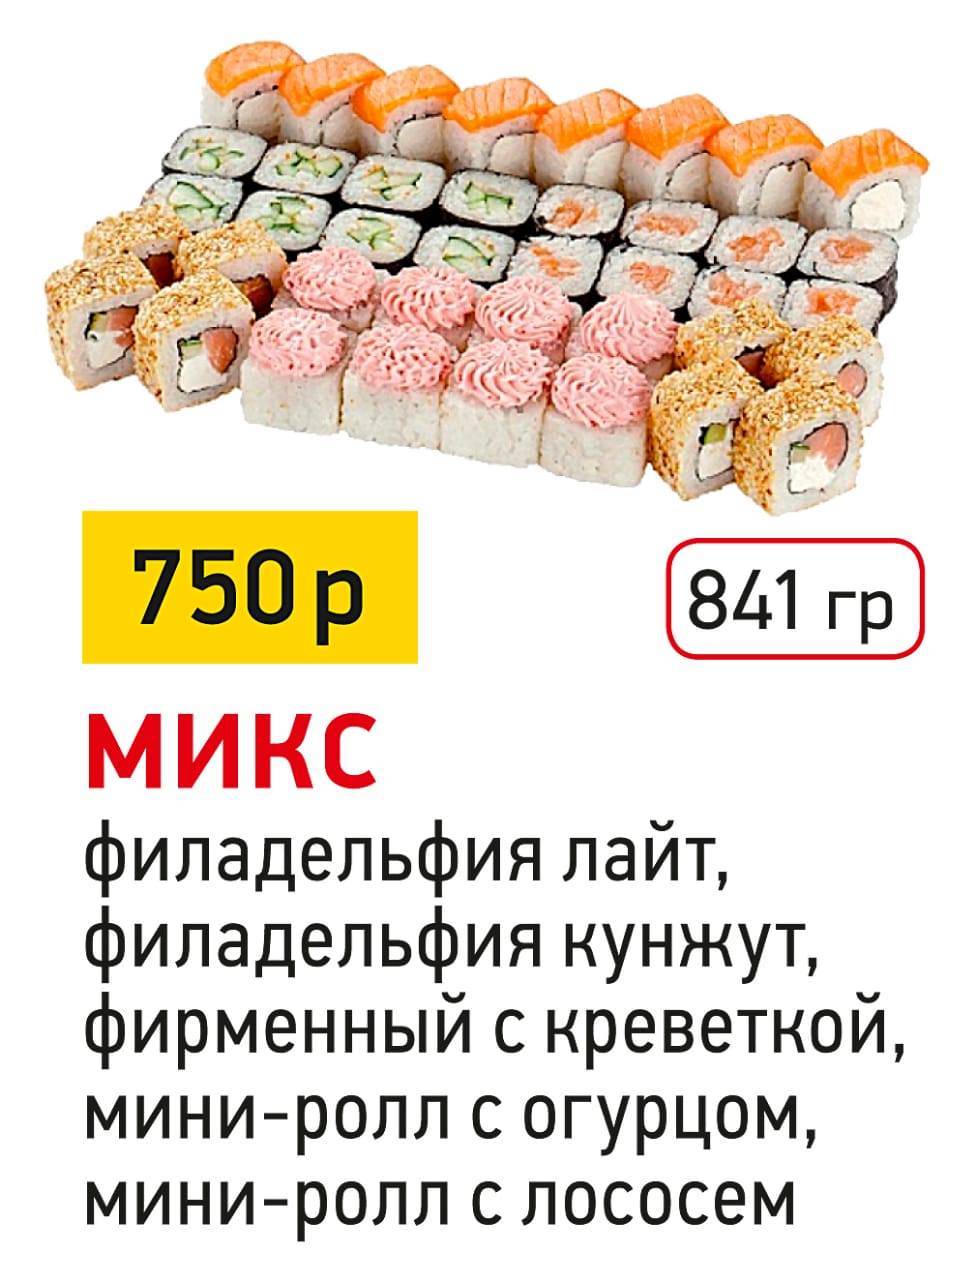 Заказать суши в октябрьске фото 100